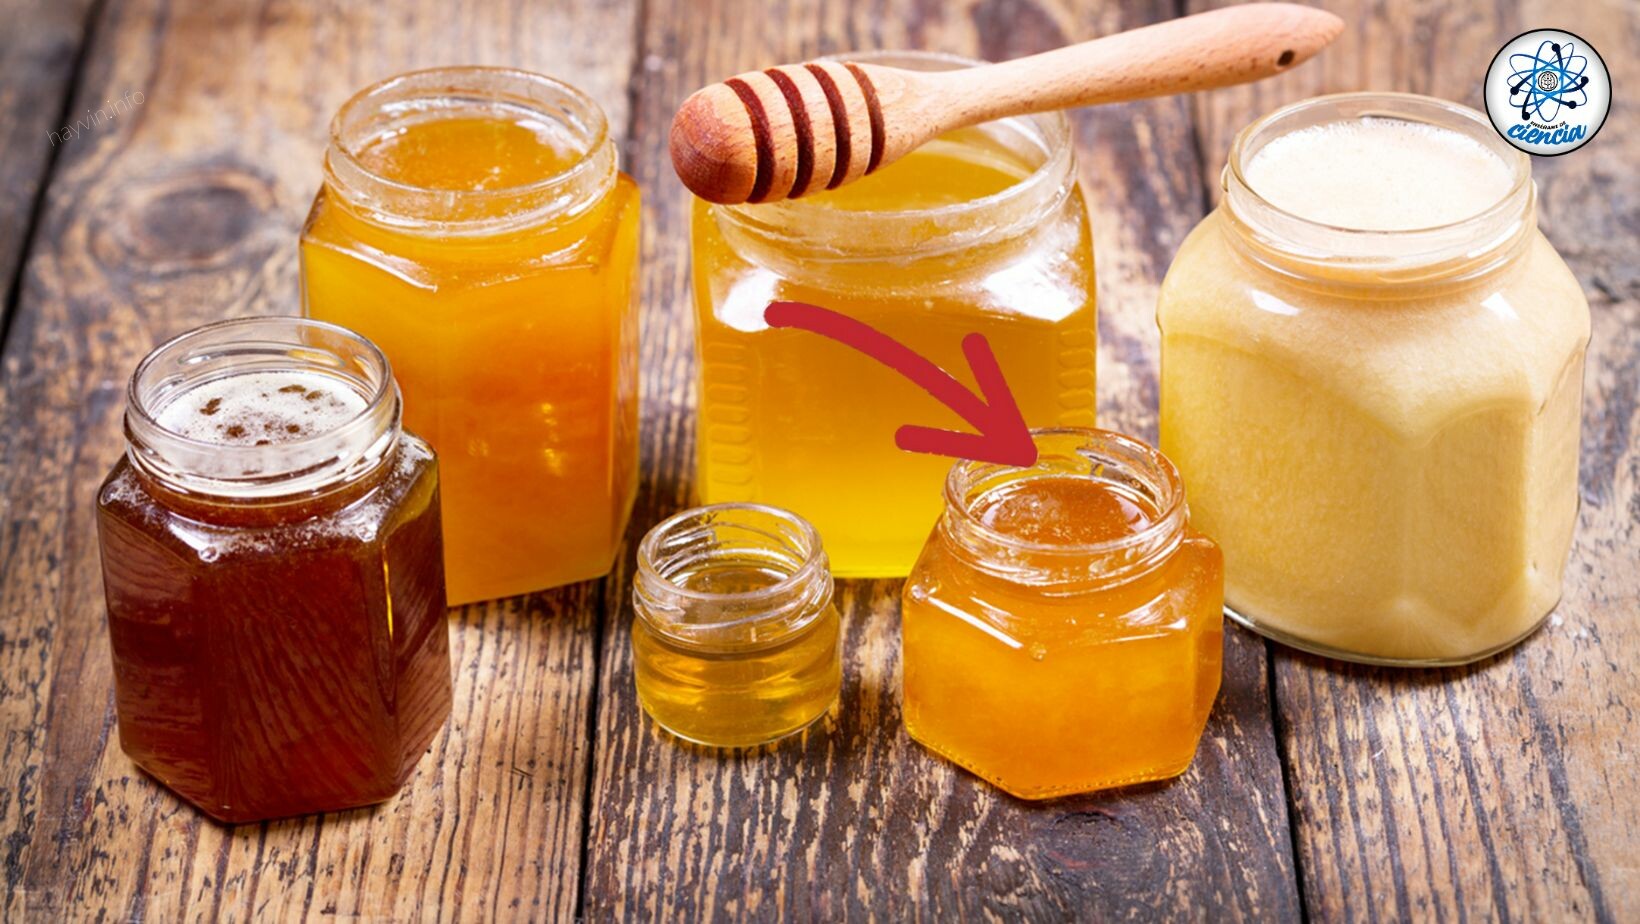 Így különböztetheti meg a hamis mézet az eredetitől, és elkerülheti egészségének kockáztatását.